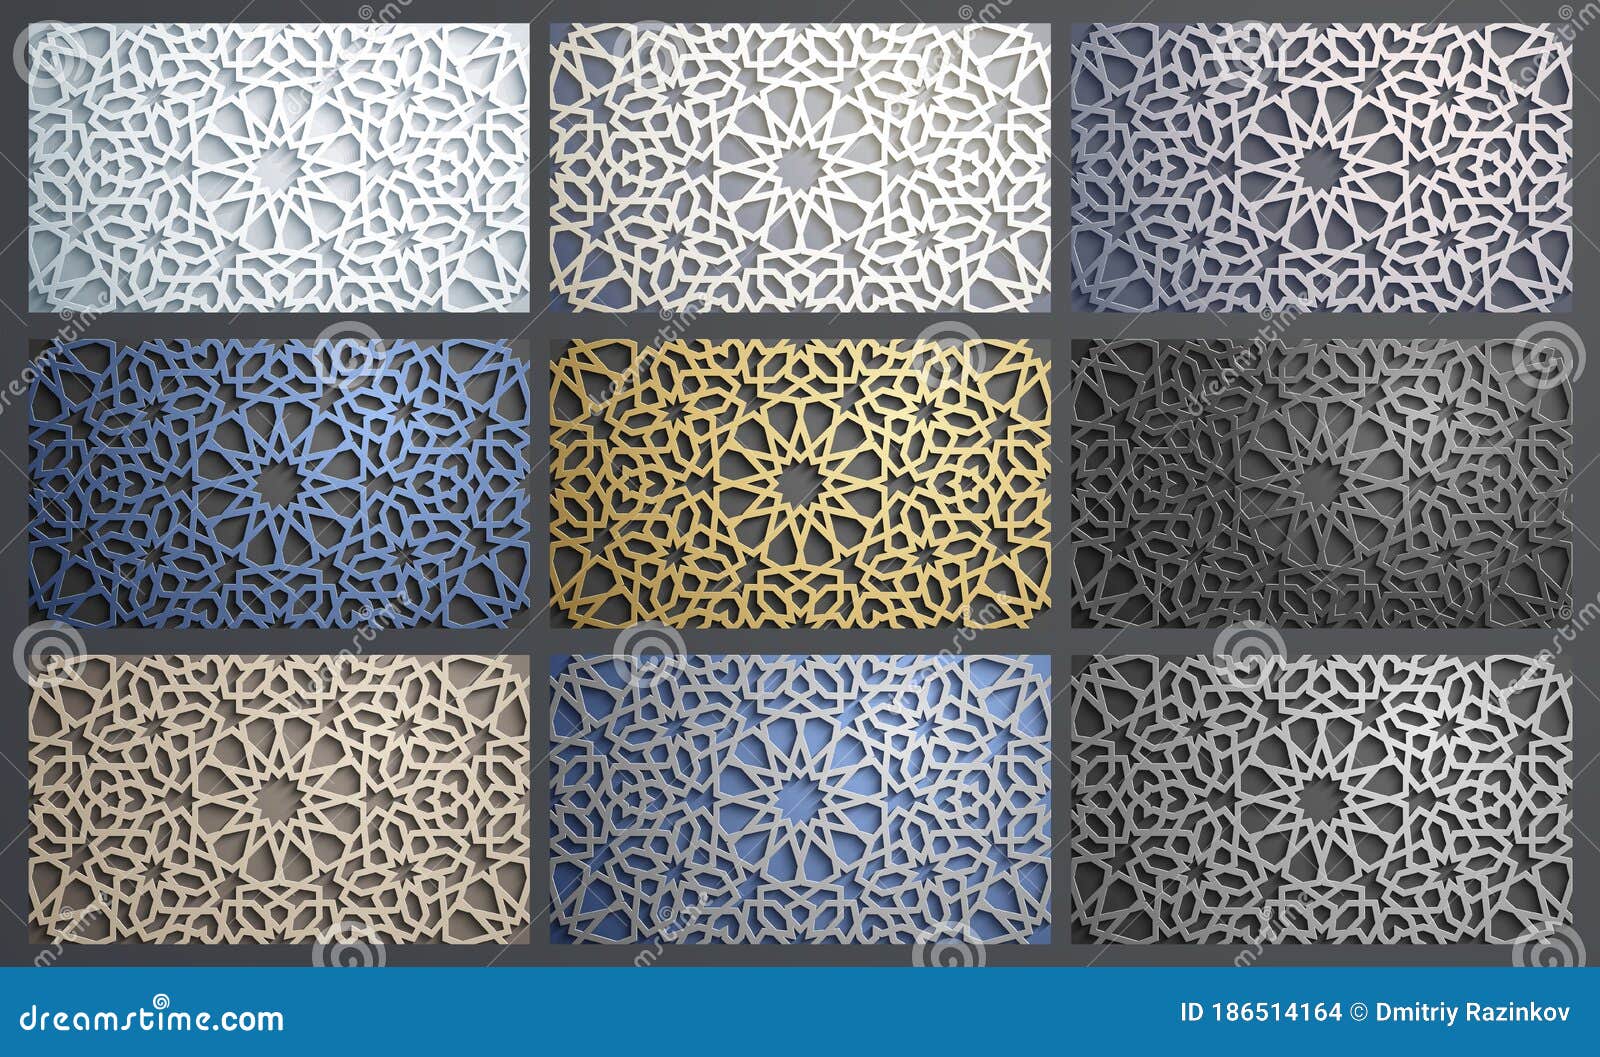 Thép chùng lên từ sự kết hợp tuyệt đẹp giữa họa tiết Hồi giáo trừu tượng và công nghệ 3D. Hãy dừng lại và chiêm ngưỡng một chút nghệ thuật tuyệt vời này qua hình ảnh mà chúng tôi cung cấp. Sức hút đến từ sự vượt thời gian của họa tiết và trung thực của công nghệ 3D.